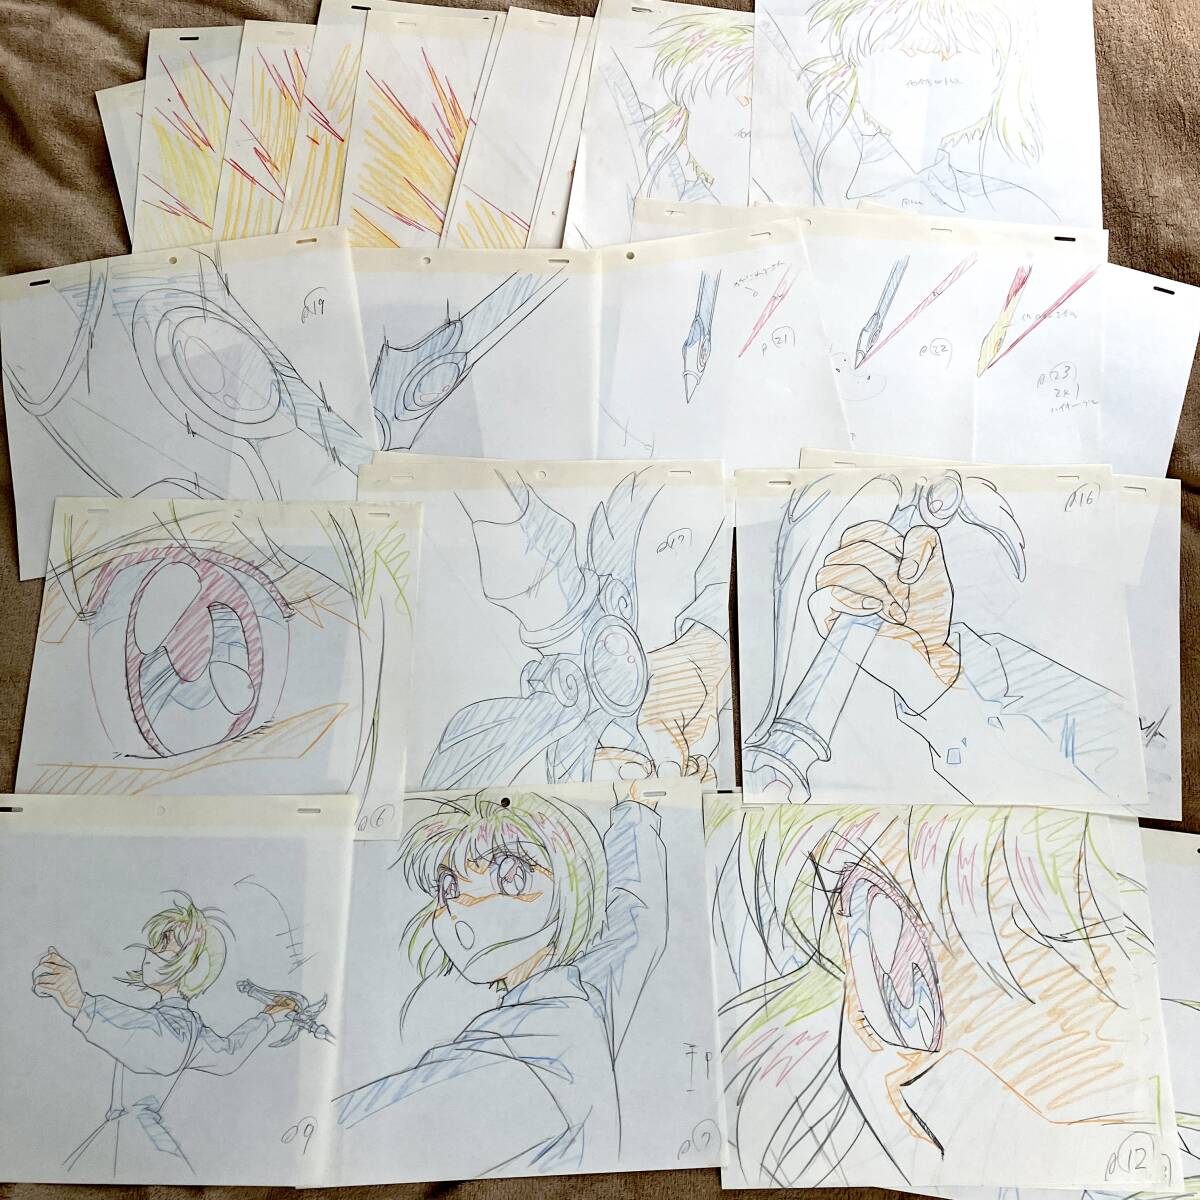  Cardcaptor Sakura исходная картина 32 шт. комплект |[ цифровая картинка Genga Cel ]